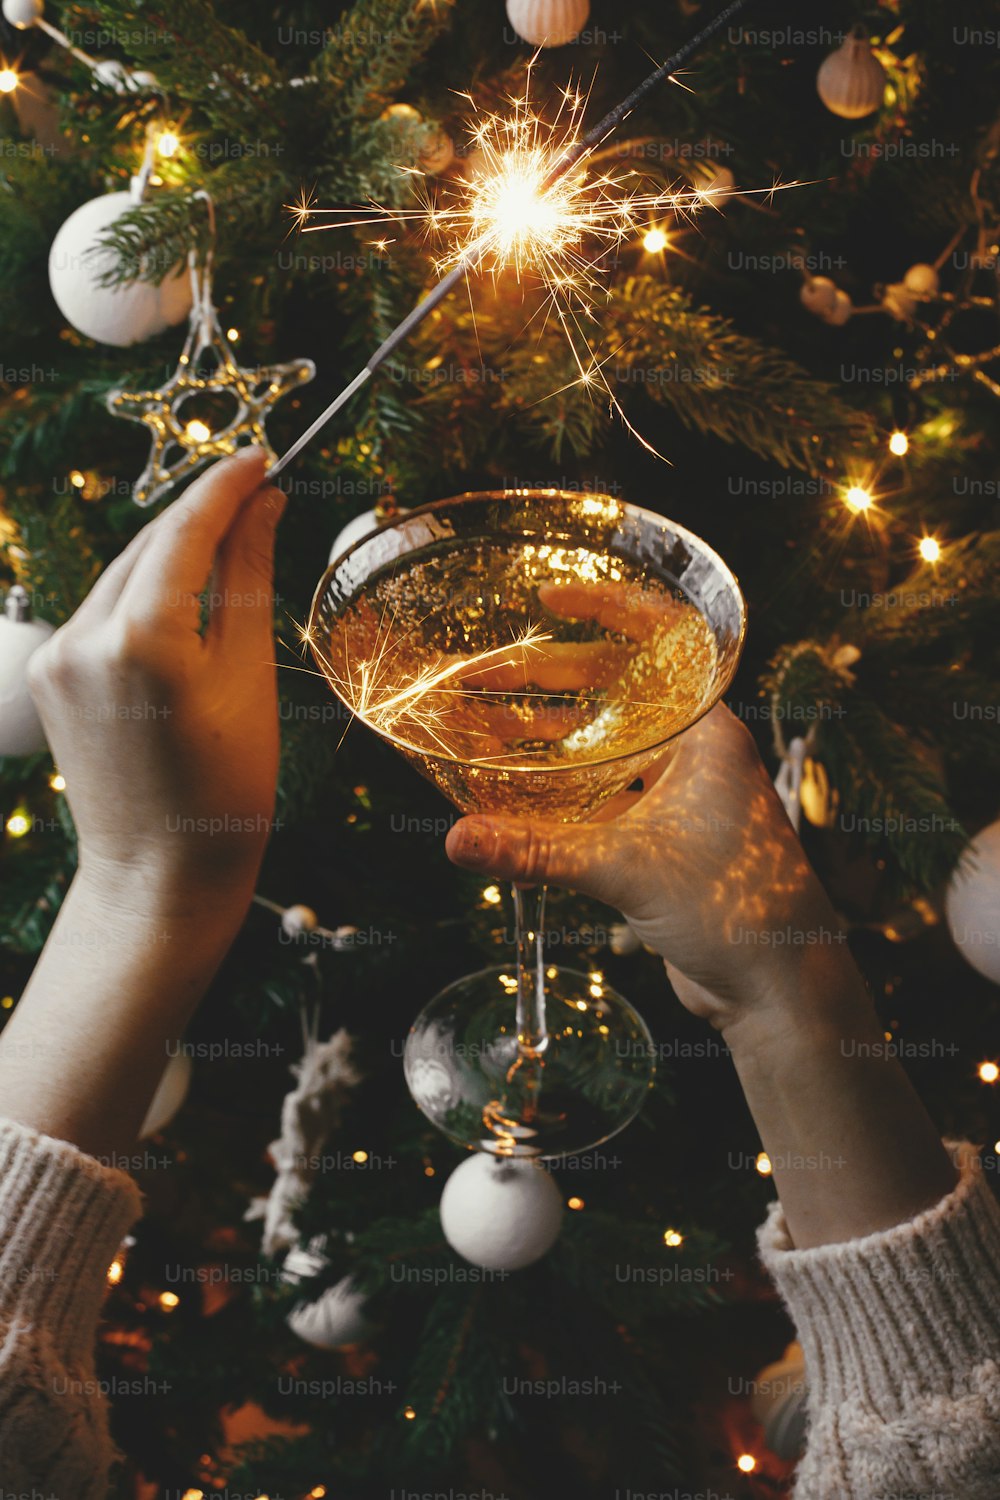 Frohes neues Jahr!! Hände mit brennender Wunderkerze und Champagnerglas auf dem Hintergrund der Weihnachtsbaumbeleuchtung. Feuerwerk bengalisches Licht und Getränk in Frauenhänden. Atmosphärischer Moment. Silvesterparty